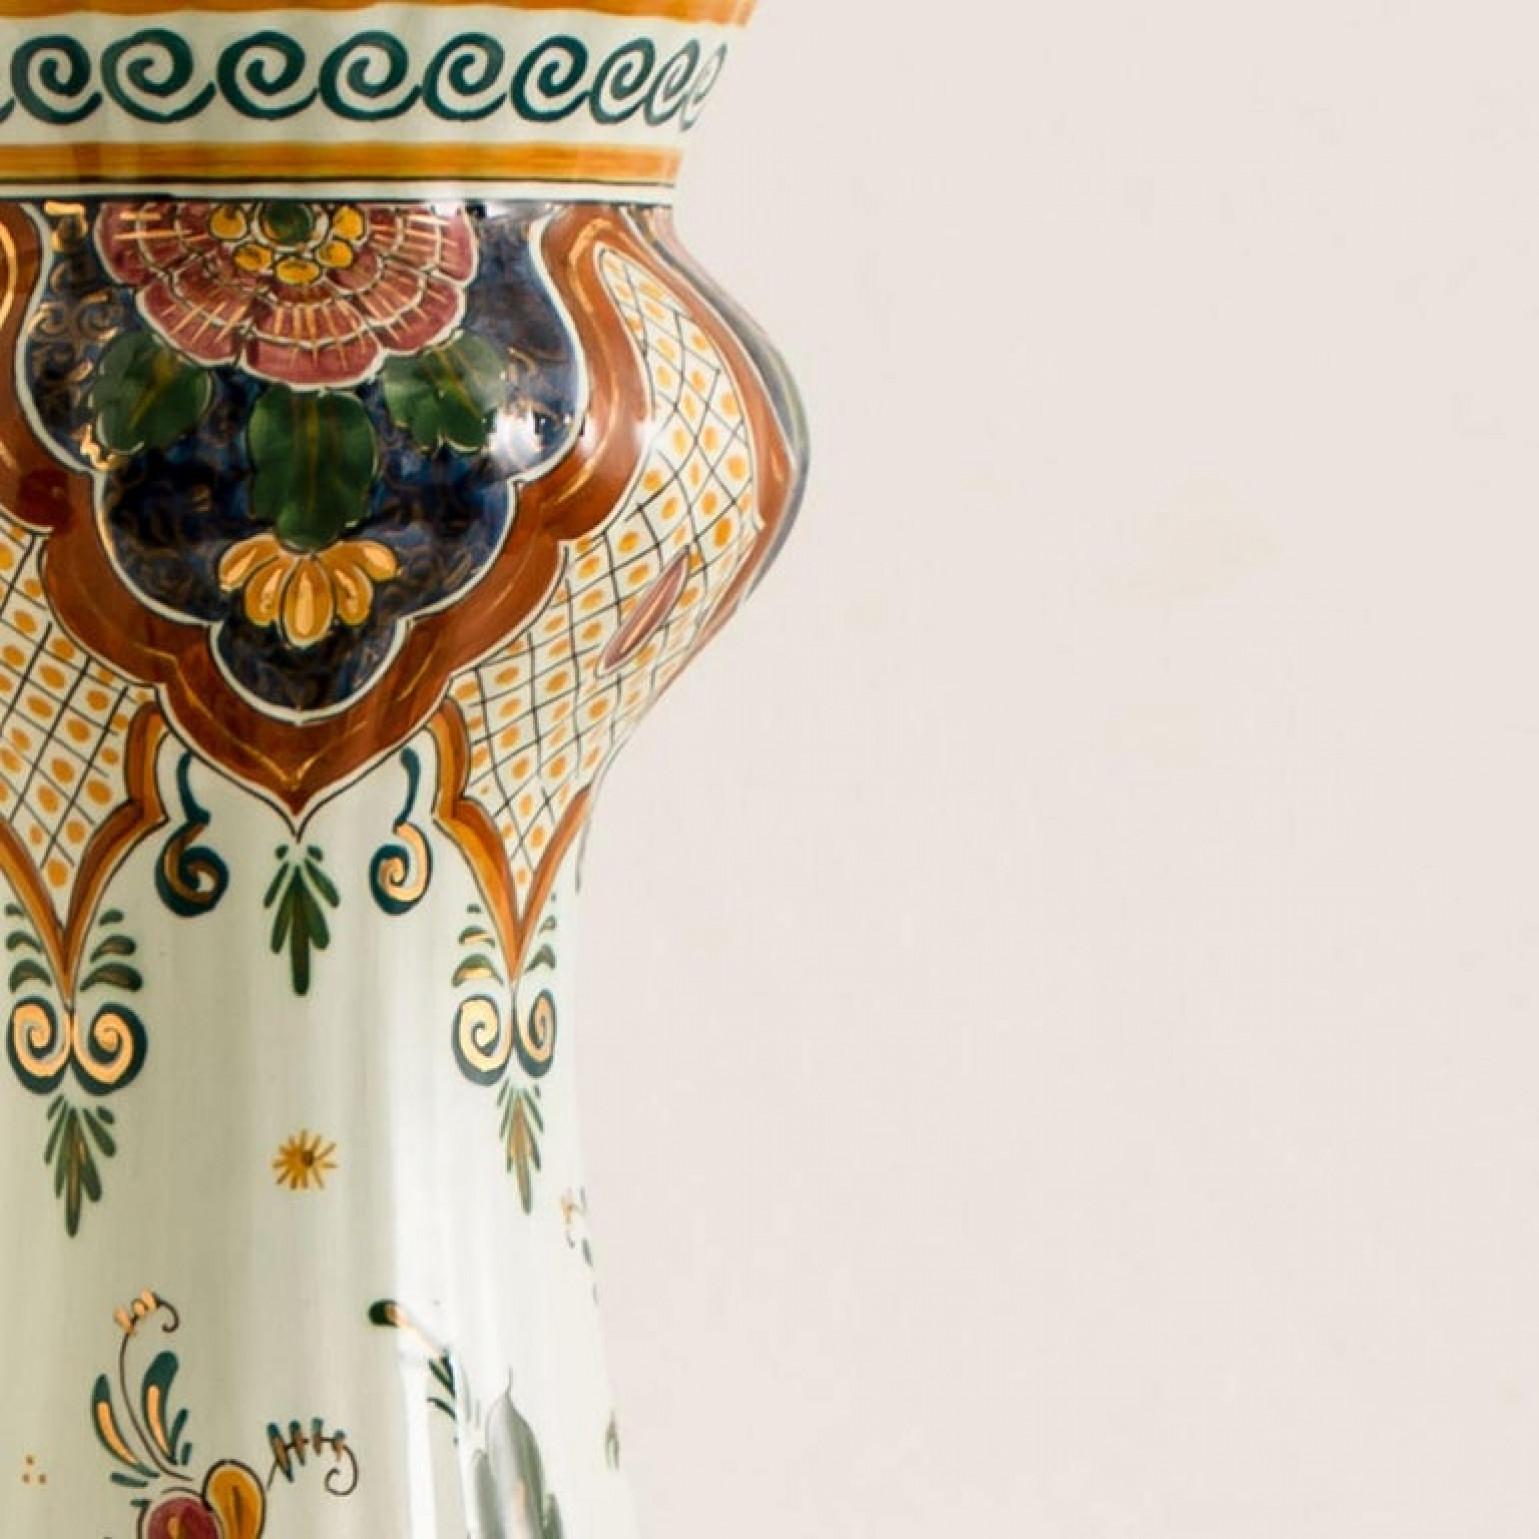 Diese außergewöhnliche, große, polychrome Delft-Keramik-Deckellampe (als Lampe umfunktionierte Vase) ist sowohl durch ihre Form als auch durch ihr handgemaltes, farbenfrohes Muster elegant. Das um 1930 hergestellte Polychrome Delft besticht durch